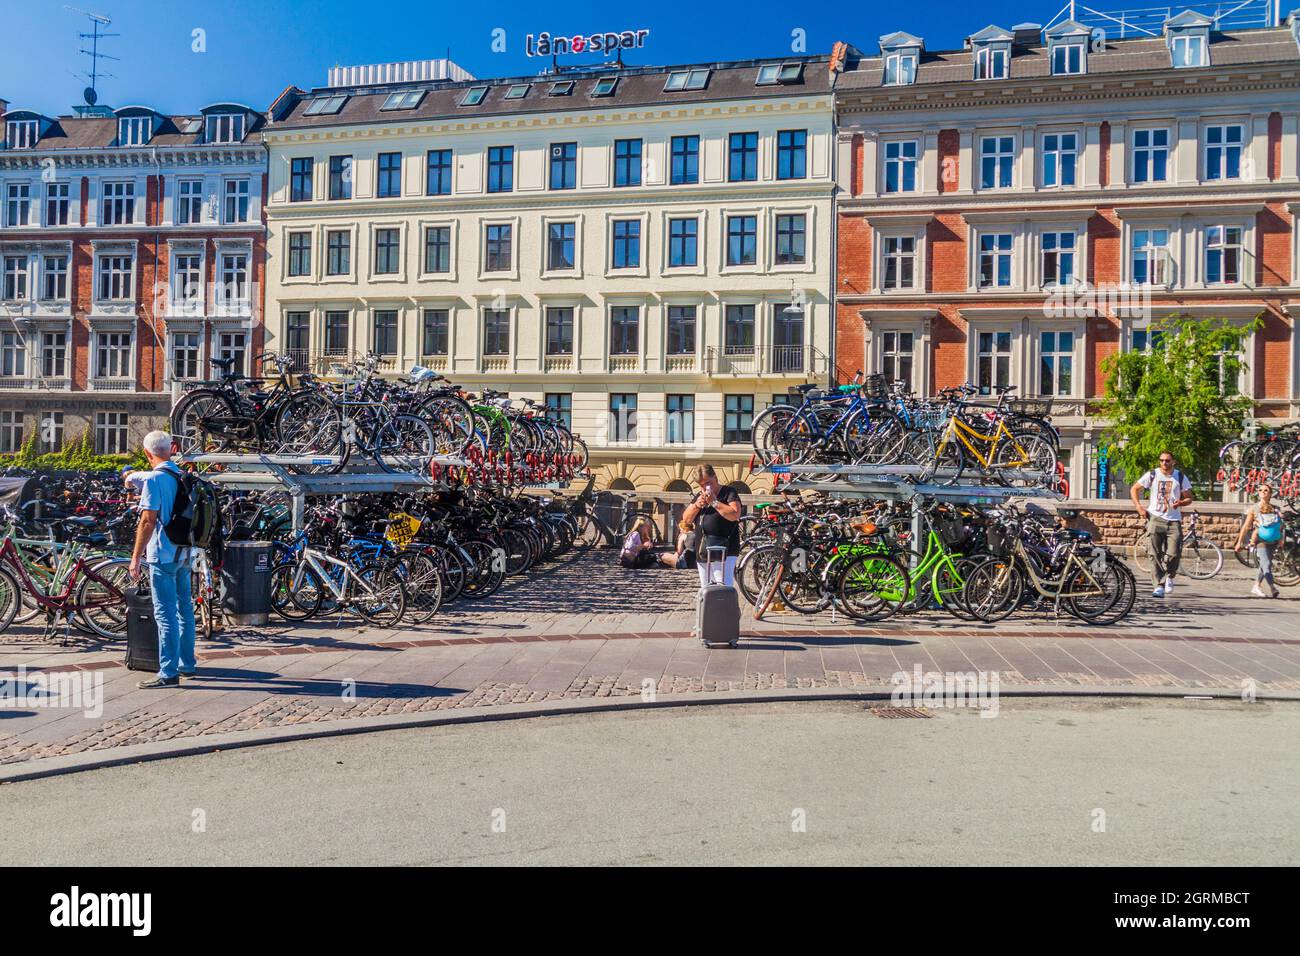 COPENHAGUE, DANEMARK - 27 AOÛT 2016 : parking à vélos près de la gare centrale de Copenhague, gare principale de Copenhague, Danemark. Banque D'Images